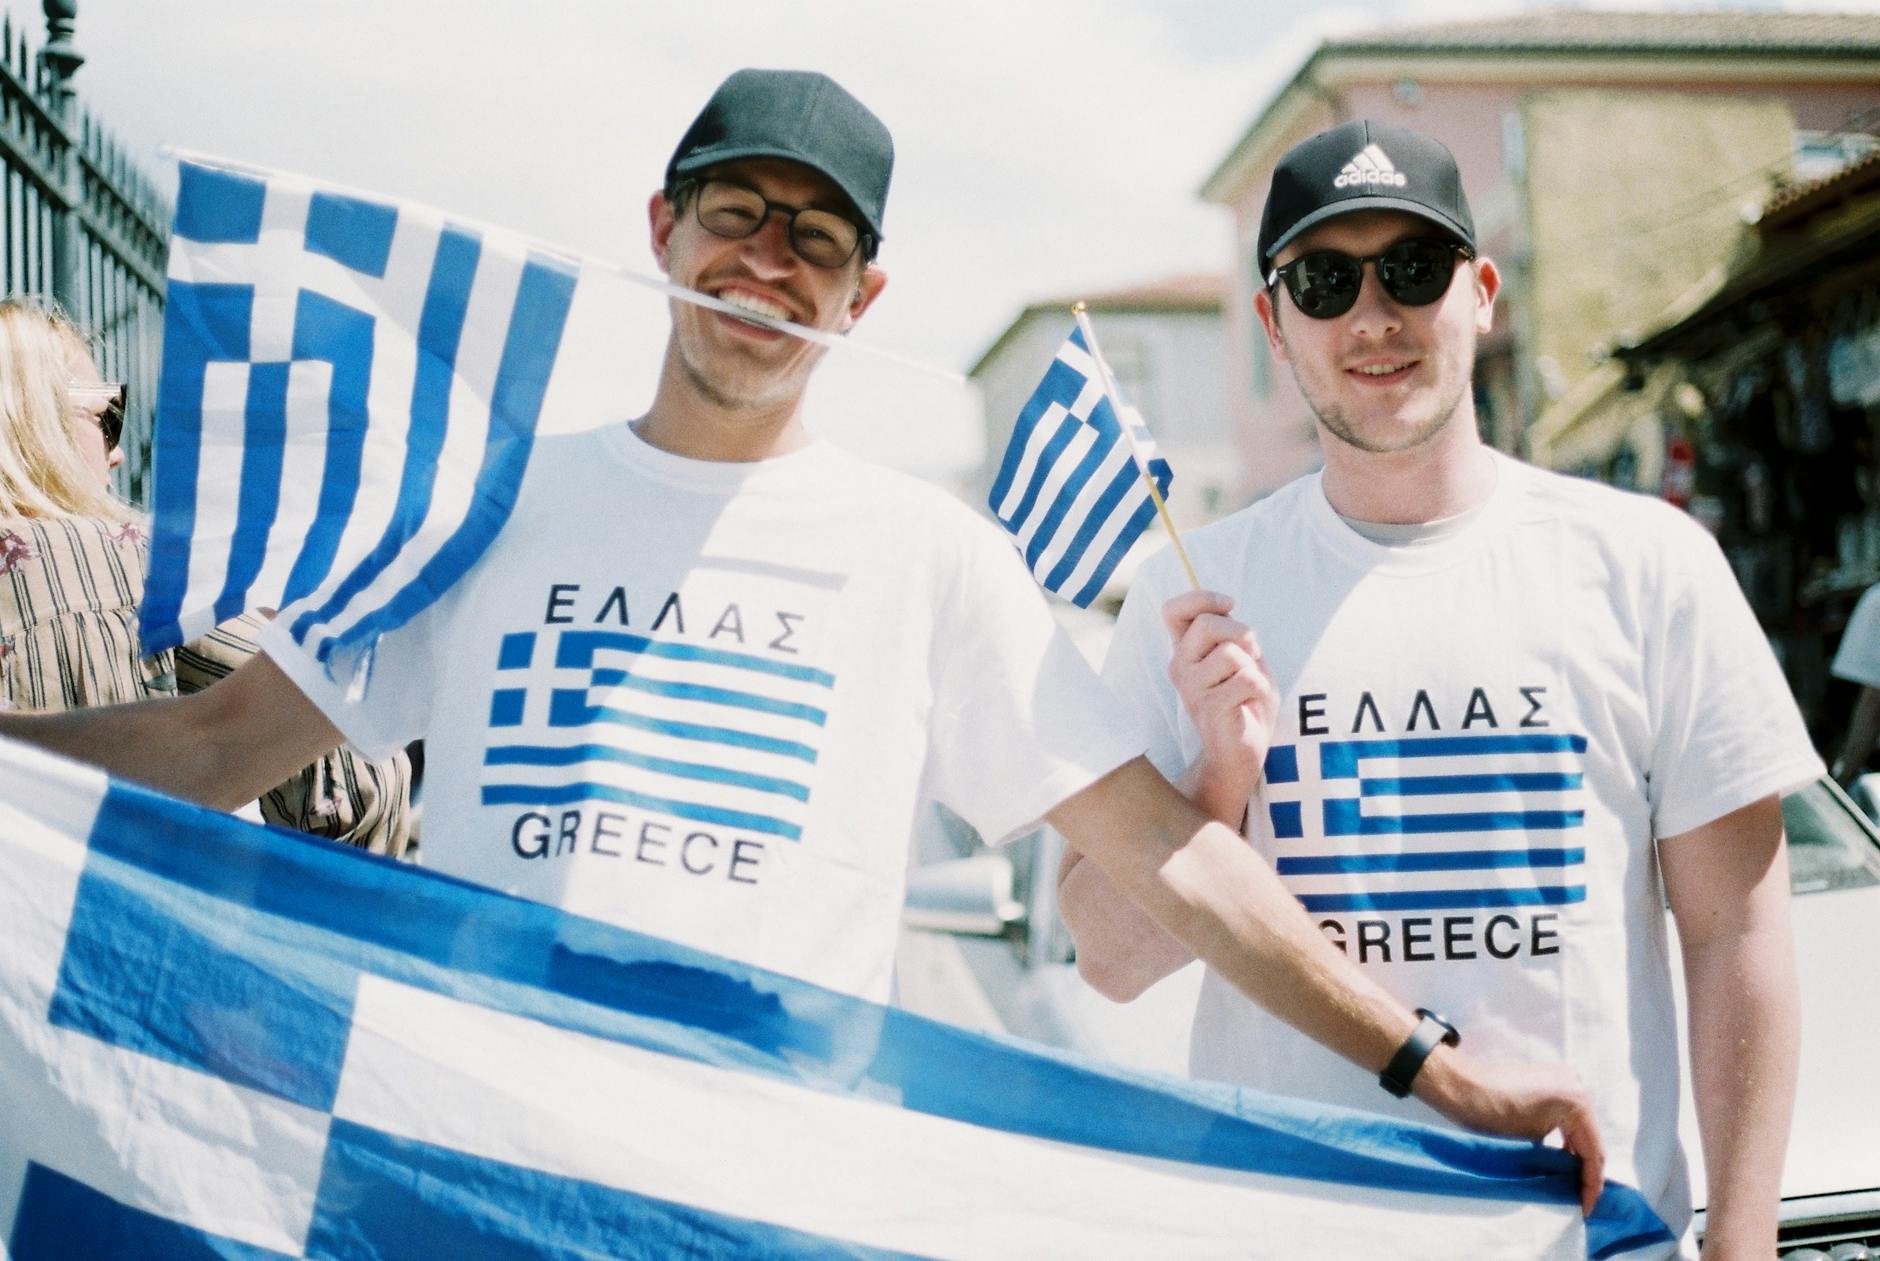 mann iført t-skjorter og holder flagg fra Hellas